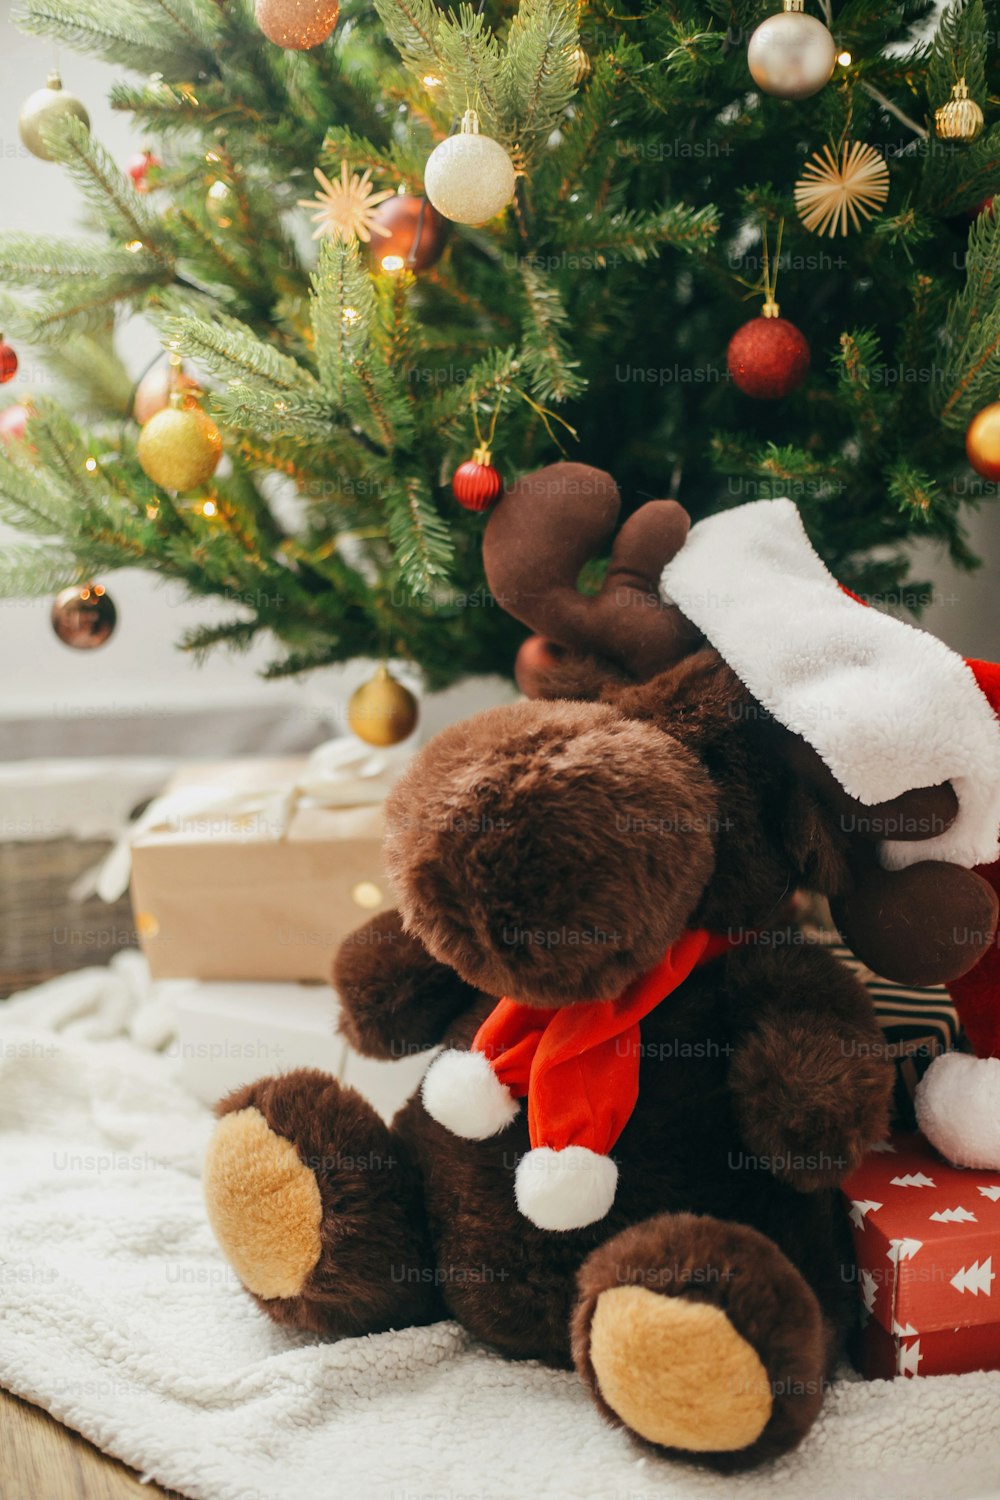 Lindo juguete de reno en sombrero de Papá Noel debajo del árbol de Navidad decorado moderno con regalos y luces festivas. Gran juguete sorpresa en el árbol de Navidad con adornos rojos y dorados, decoración de habitación escandinava